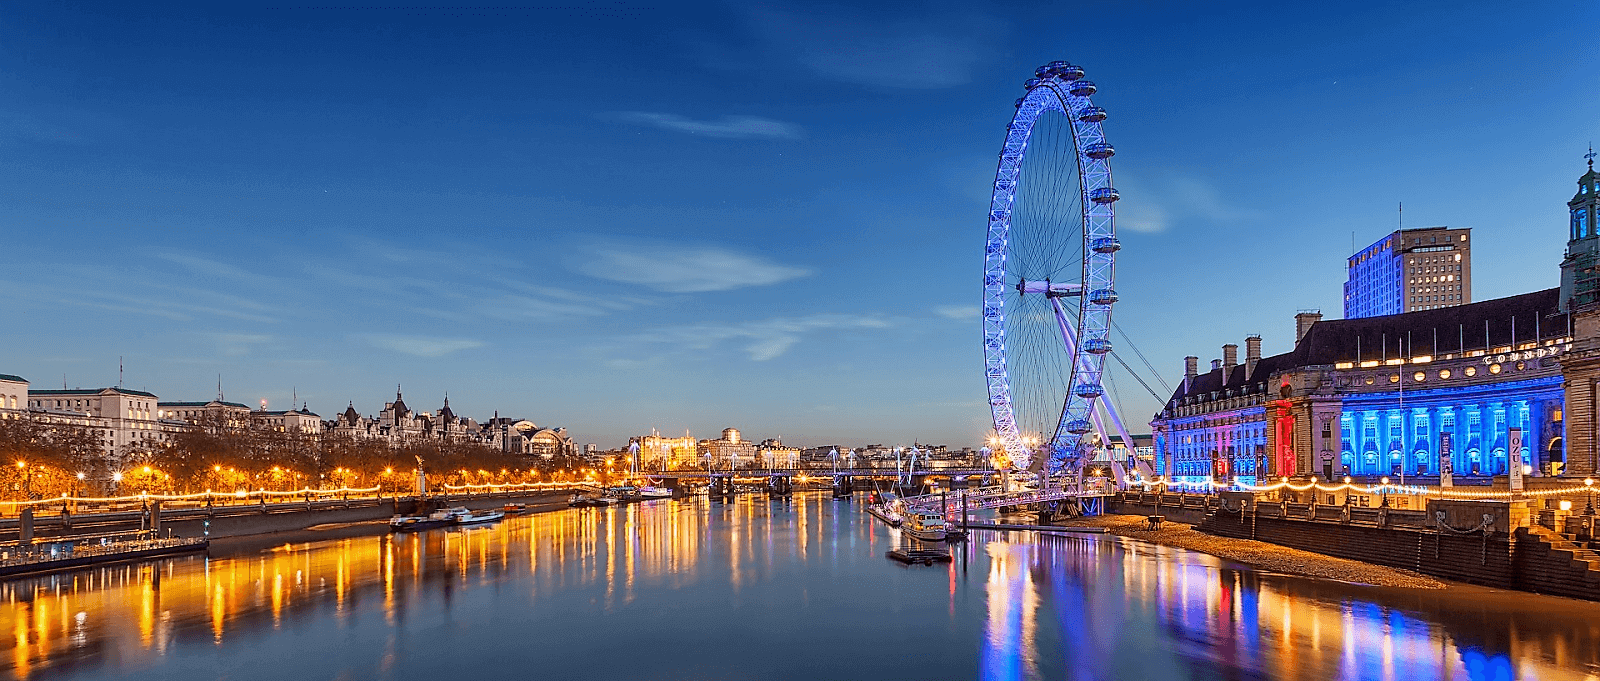 the-iconic-illuminated-Thames-scenery